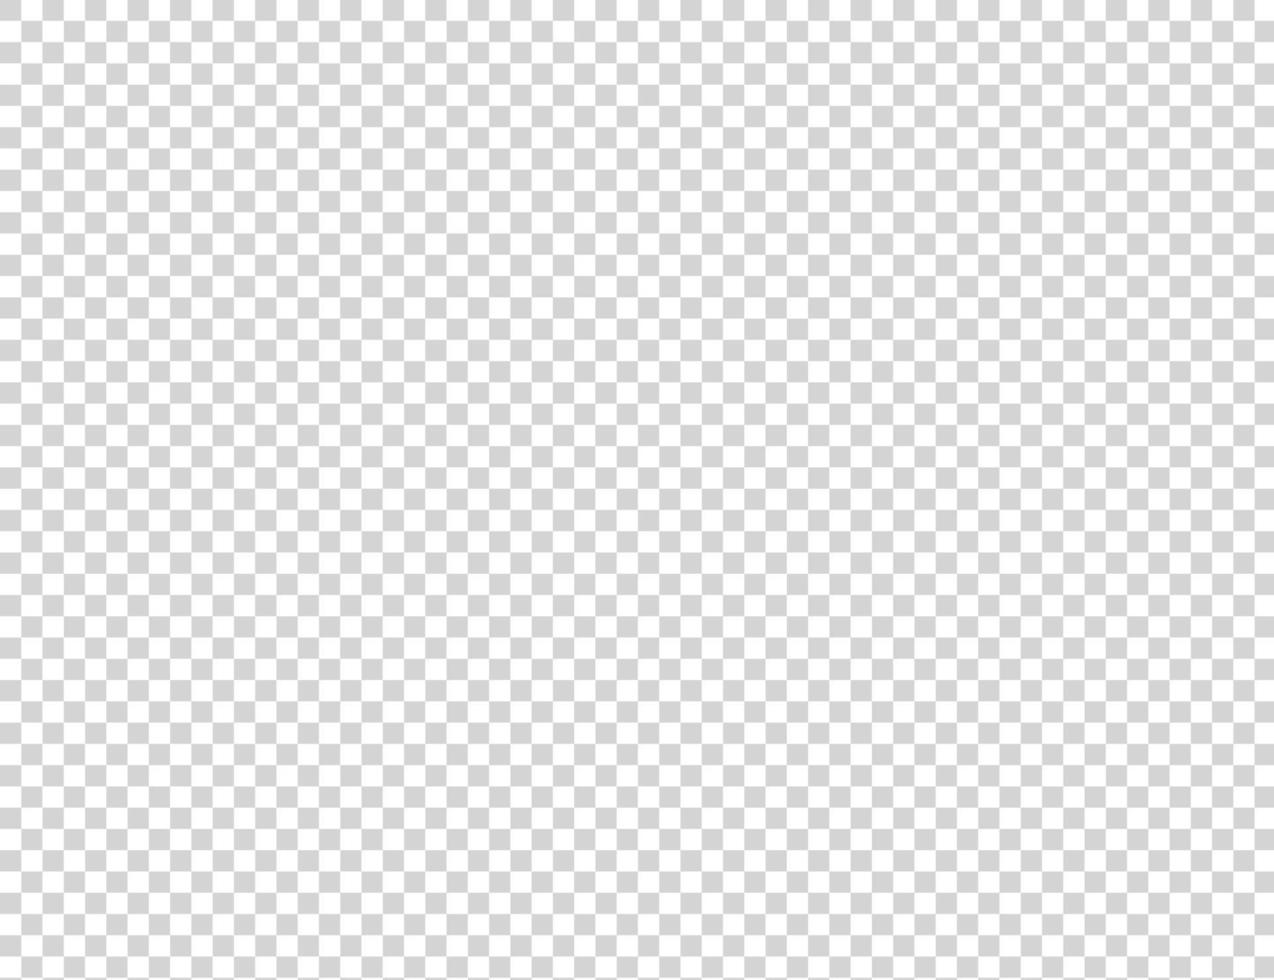 fondo transparente.fondo de pantalla de cuadrados grises y blancos.patrón de cuadrícula transparente. vector